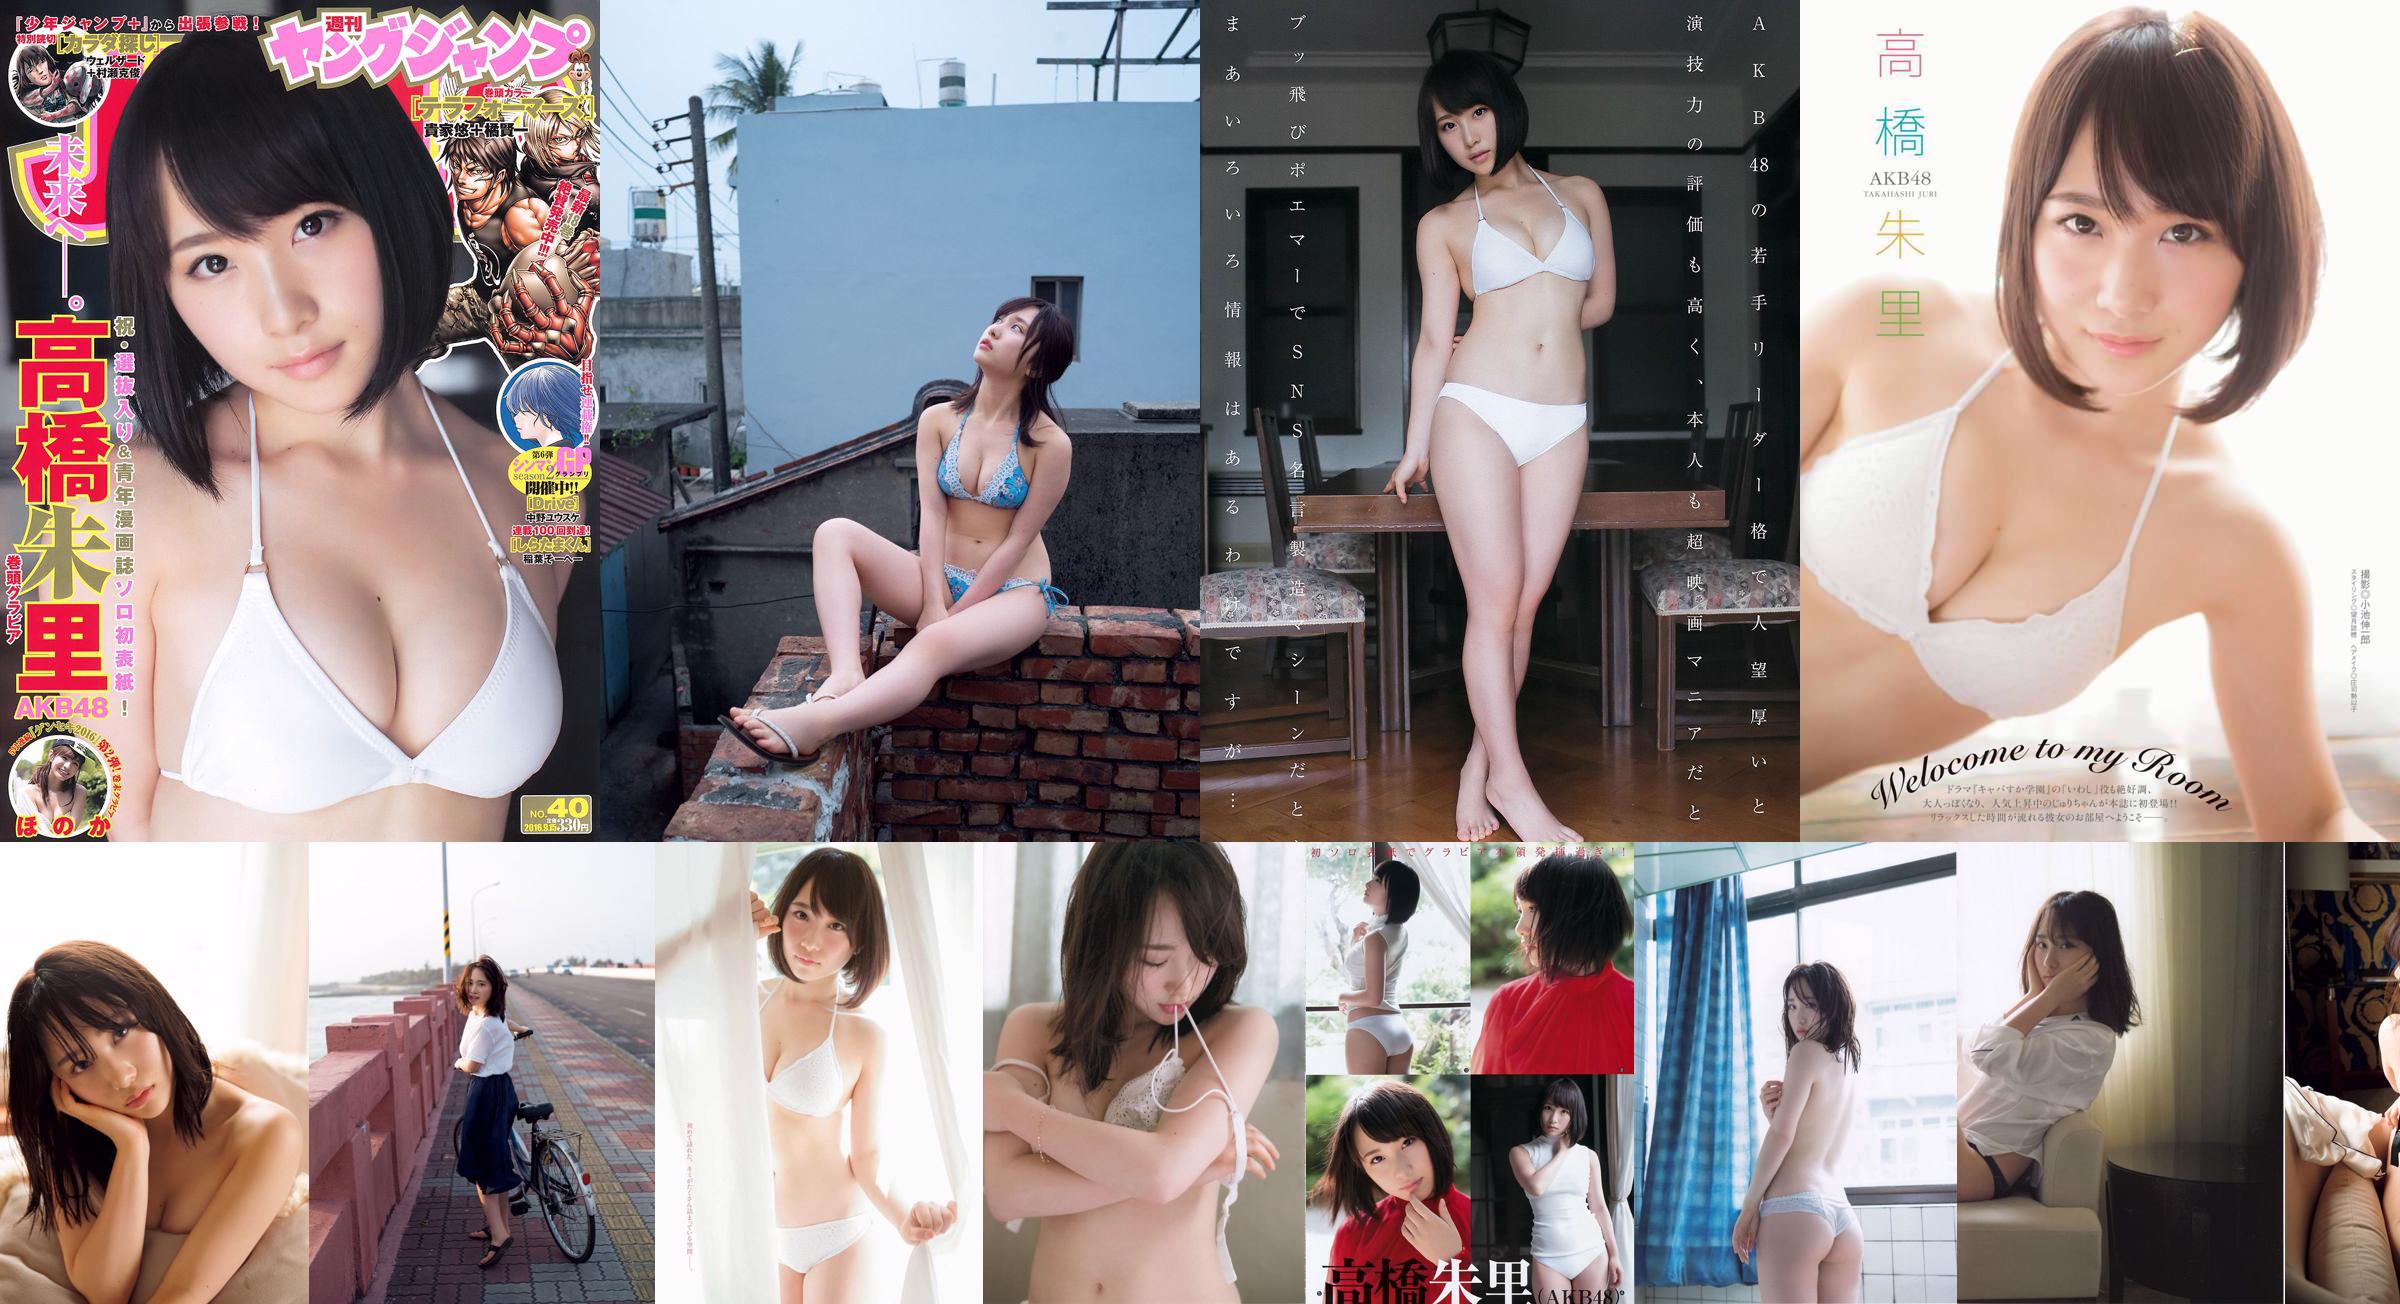 [FREITAG] Takahashi Juri "AKB48s" Beauty Bust "" Foto No.7604ab Seite 1